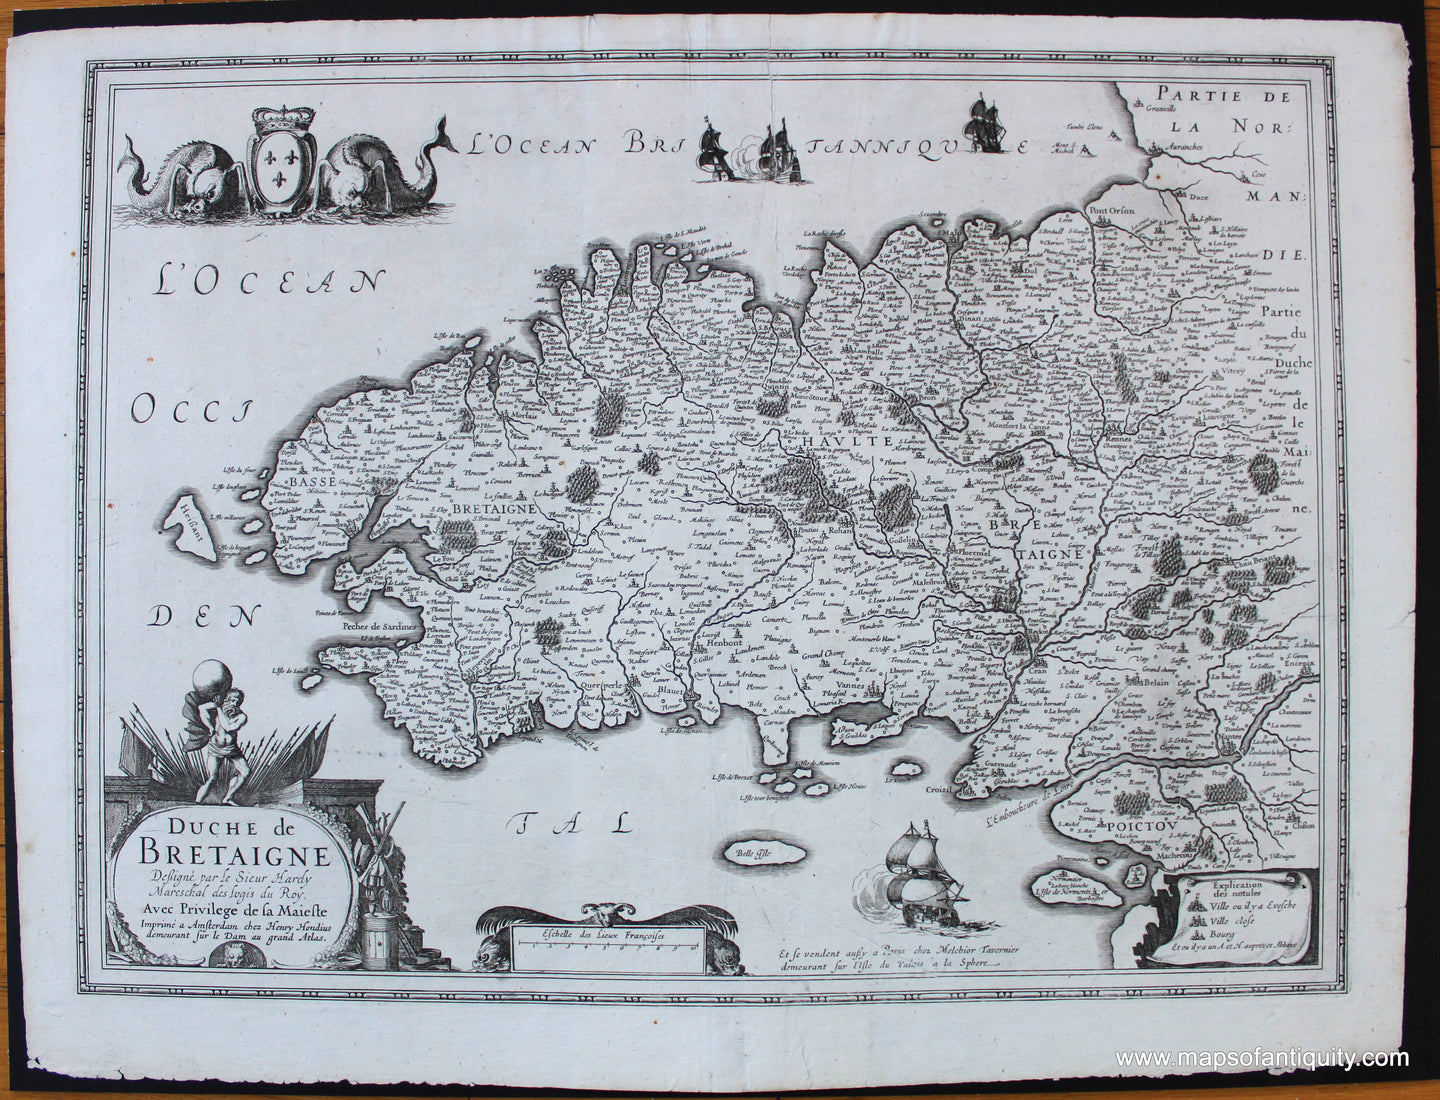 1630 - Brittany, France - Duche de Bretaigne - Antique Map